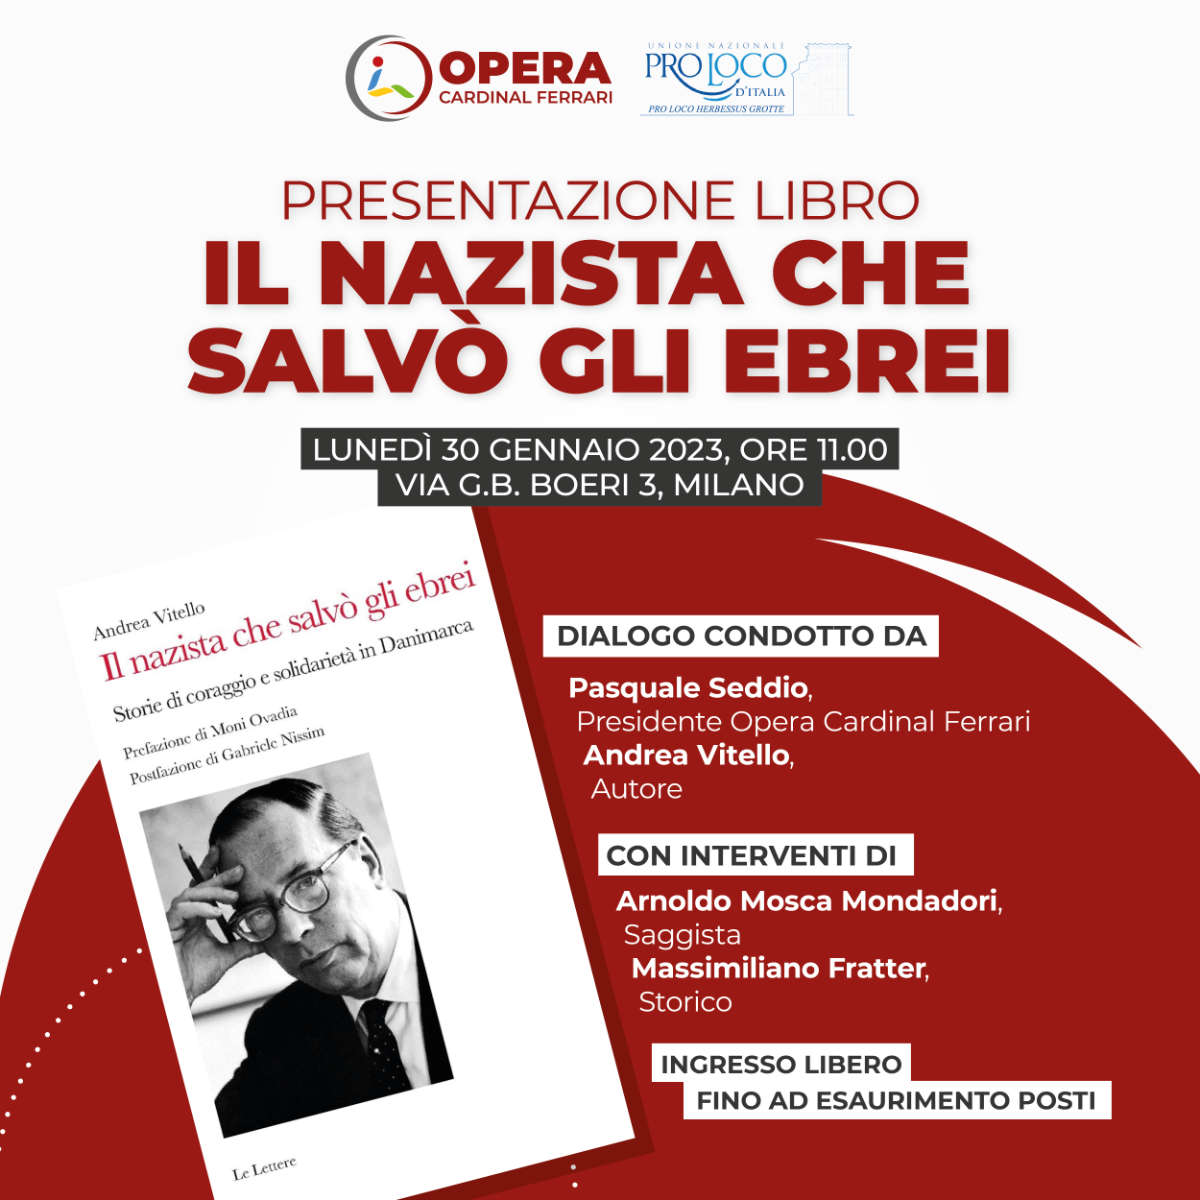 Opera Cardinal Ferrari: presentazione libro "Il nazista che salvò gli ebrei"